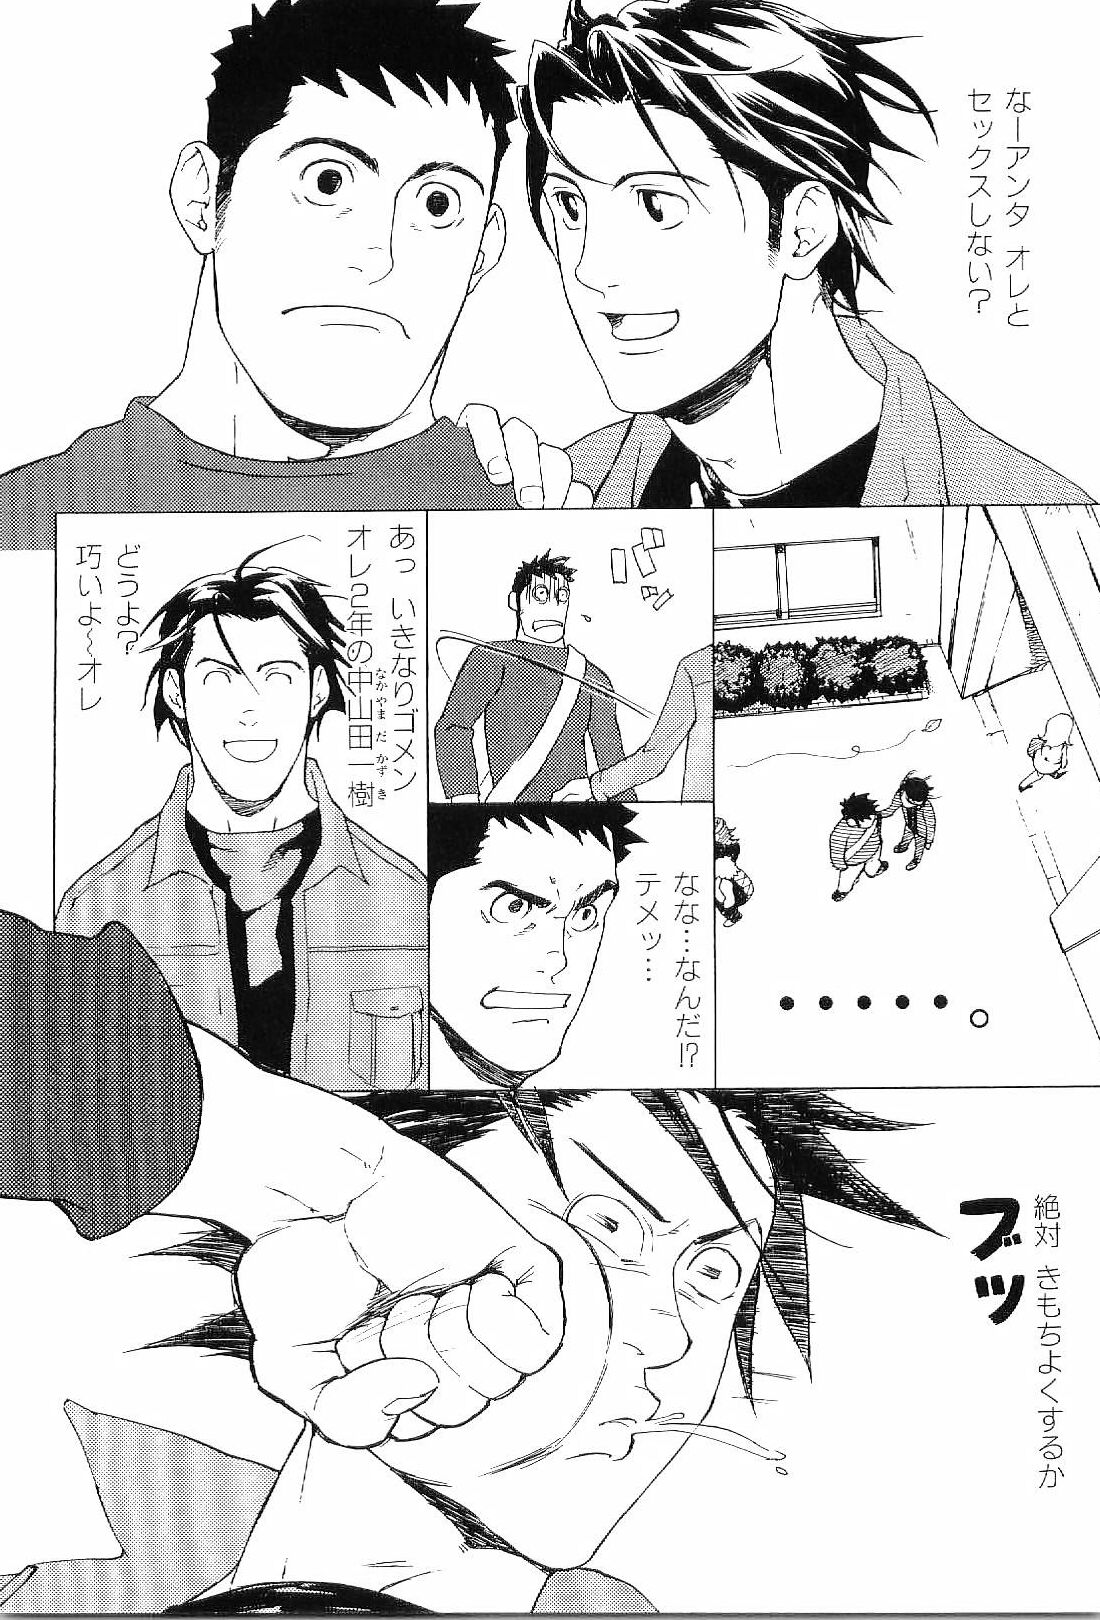 [Anthology] Kinniku Otoko Vol. 8 page 31 full